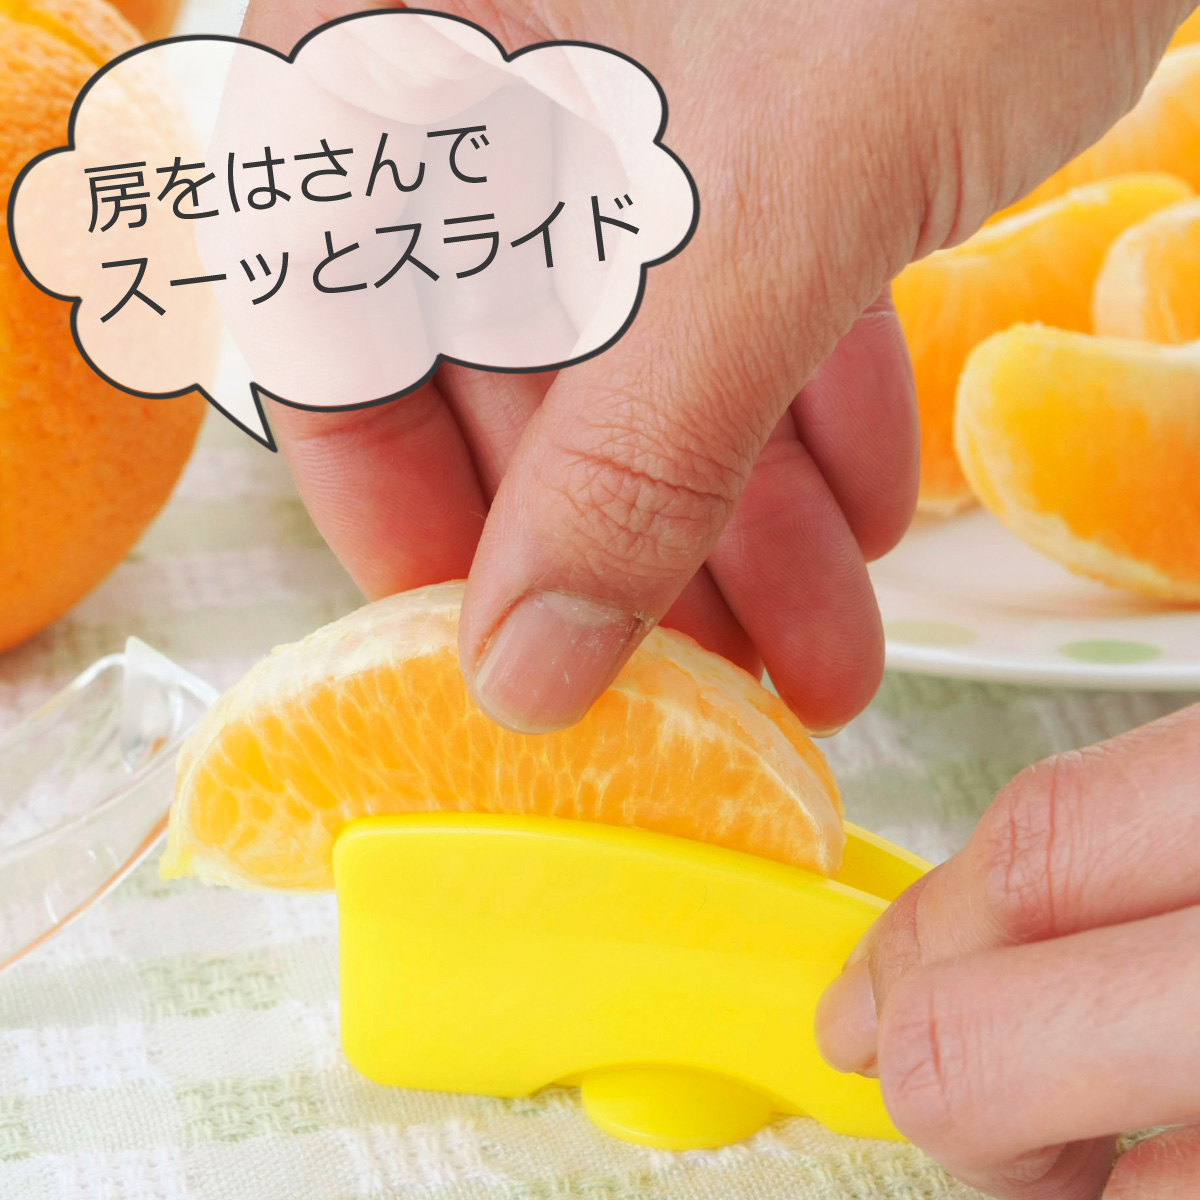 楽天市場 ラクラク 皮むき 2個組日本製 オレンジ 夏みかん はっさく みかん ピーラーフレッシュ フルーツ パフェデザート 下村企販 エルル